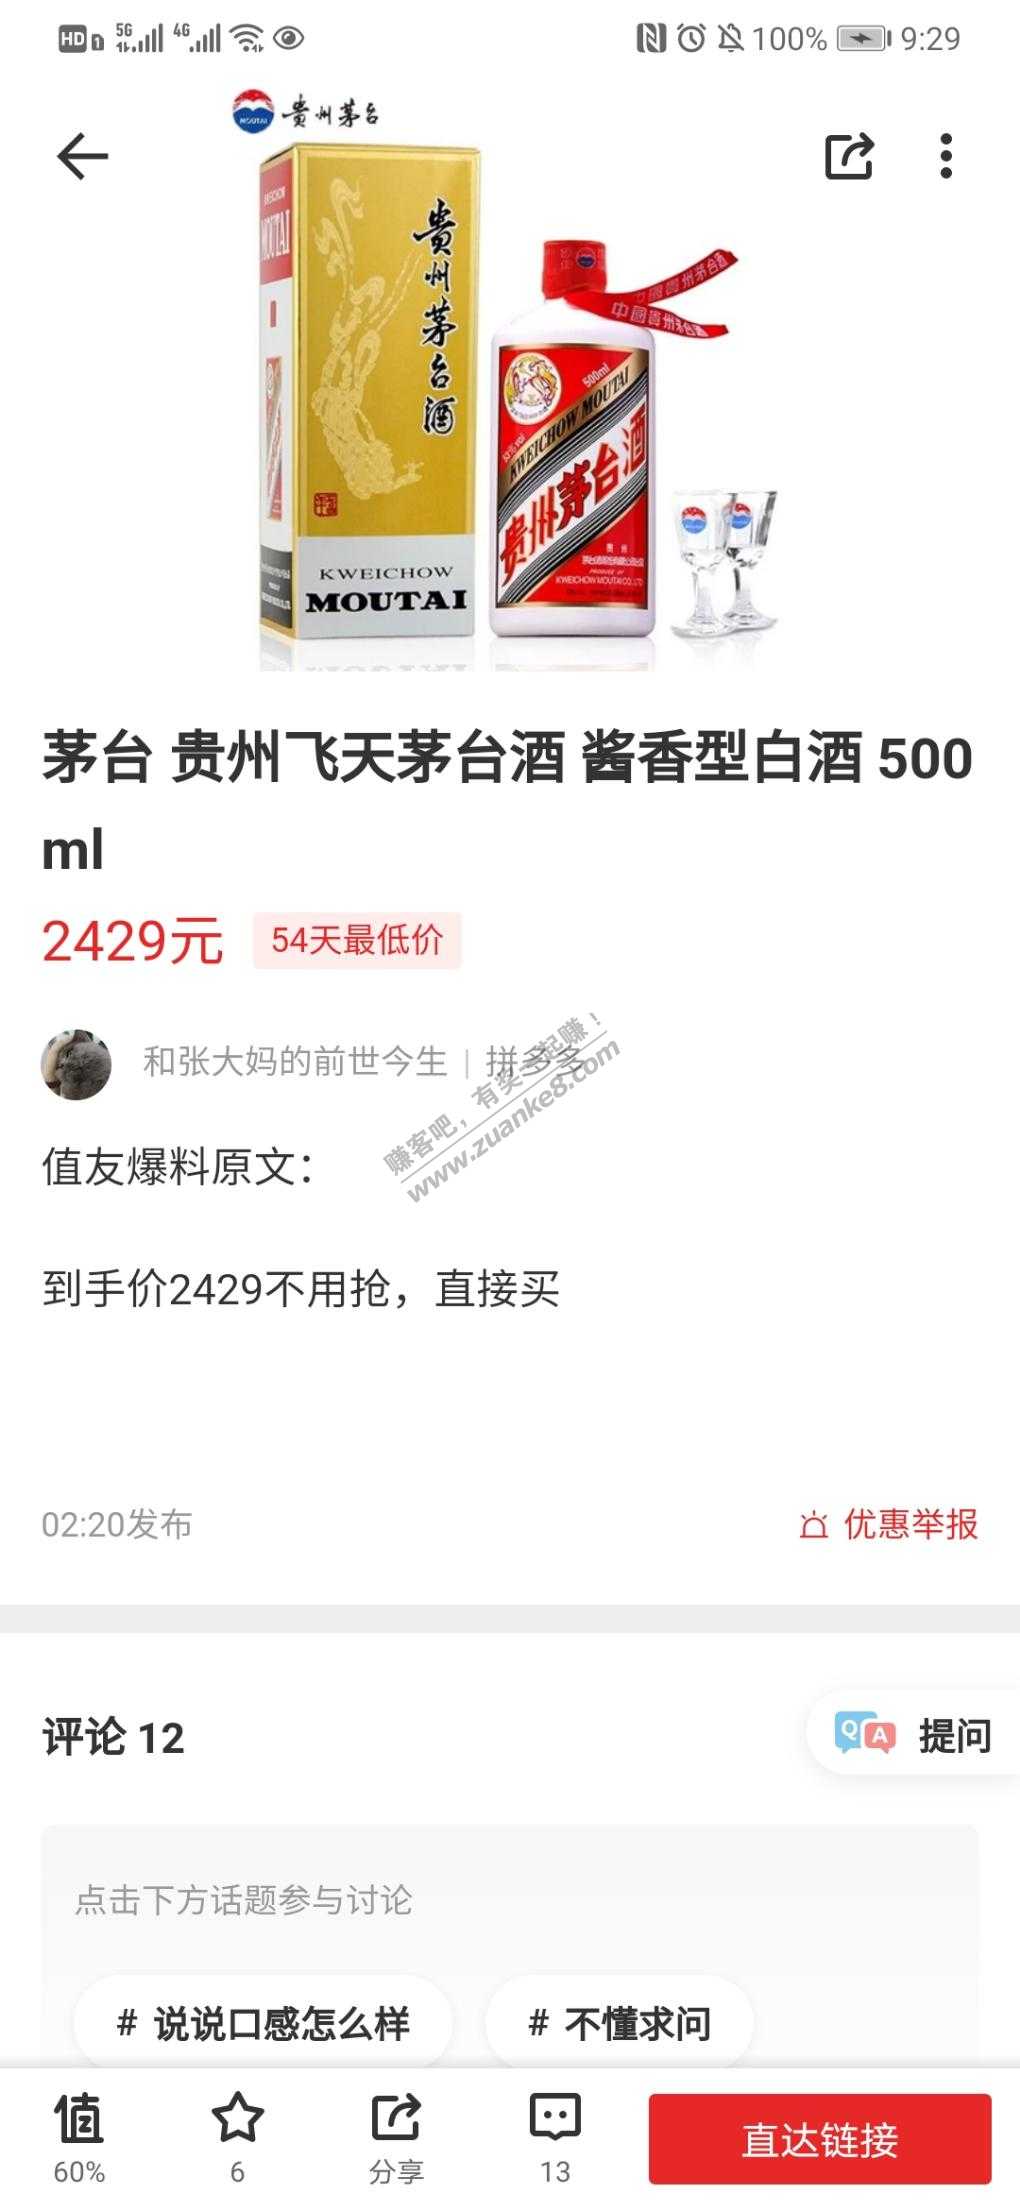 多多茅台2429-不用抢-香不香-惠小助(52huixz.com)